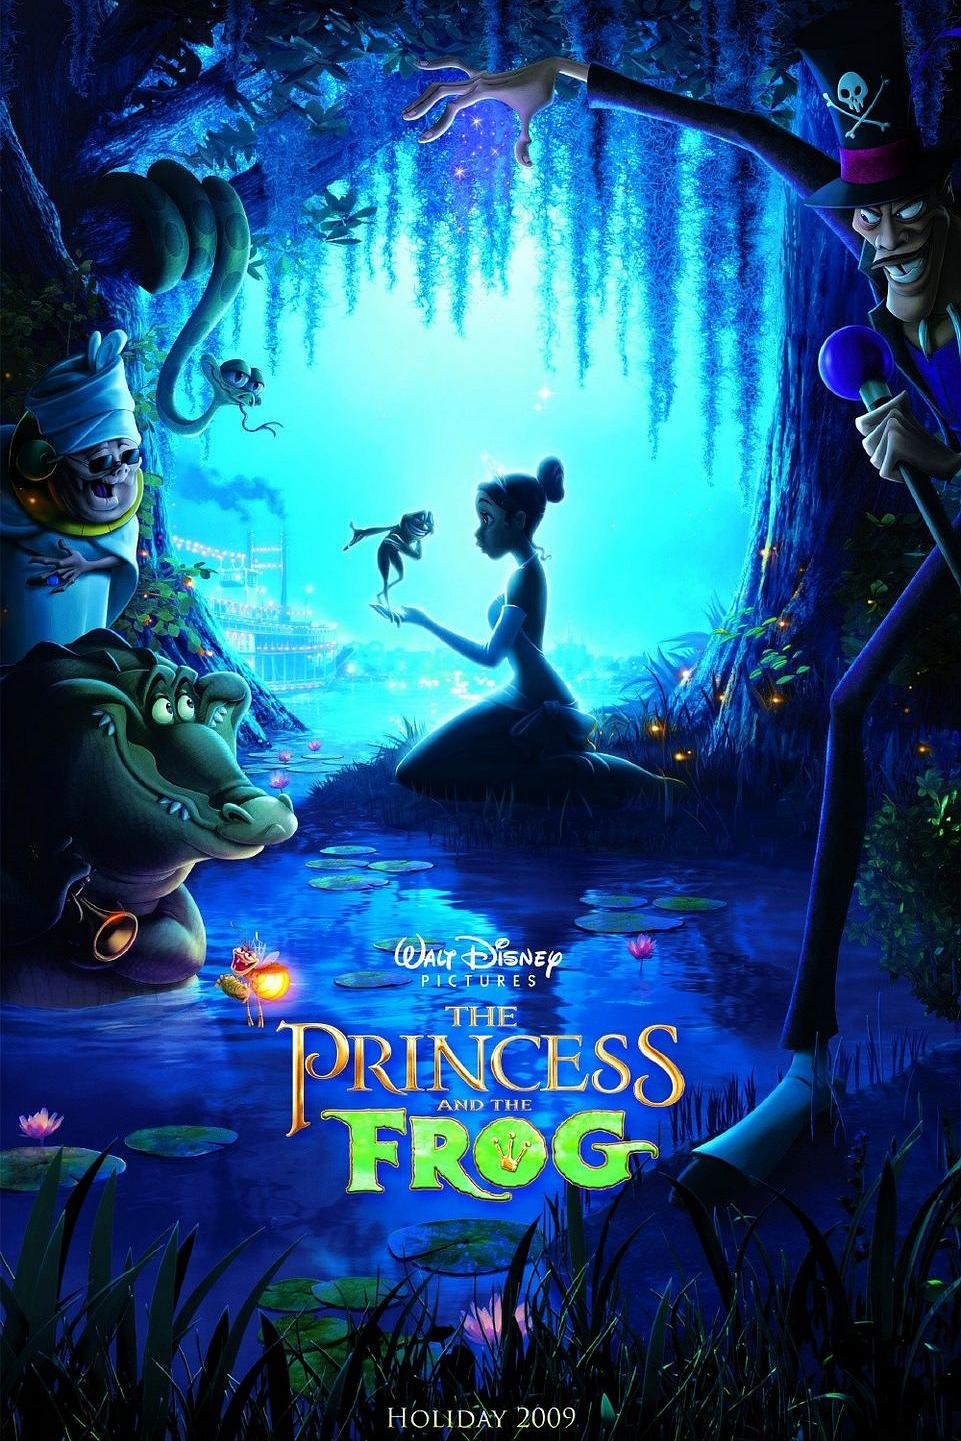 公主与田鸡 The.Princess.and.the.Frog.2009.2160p.BluRay.REMUX.HEVC.TrueHD.7.1.Atmos-FGT 38.60GB-1.png